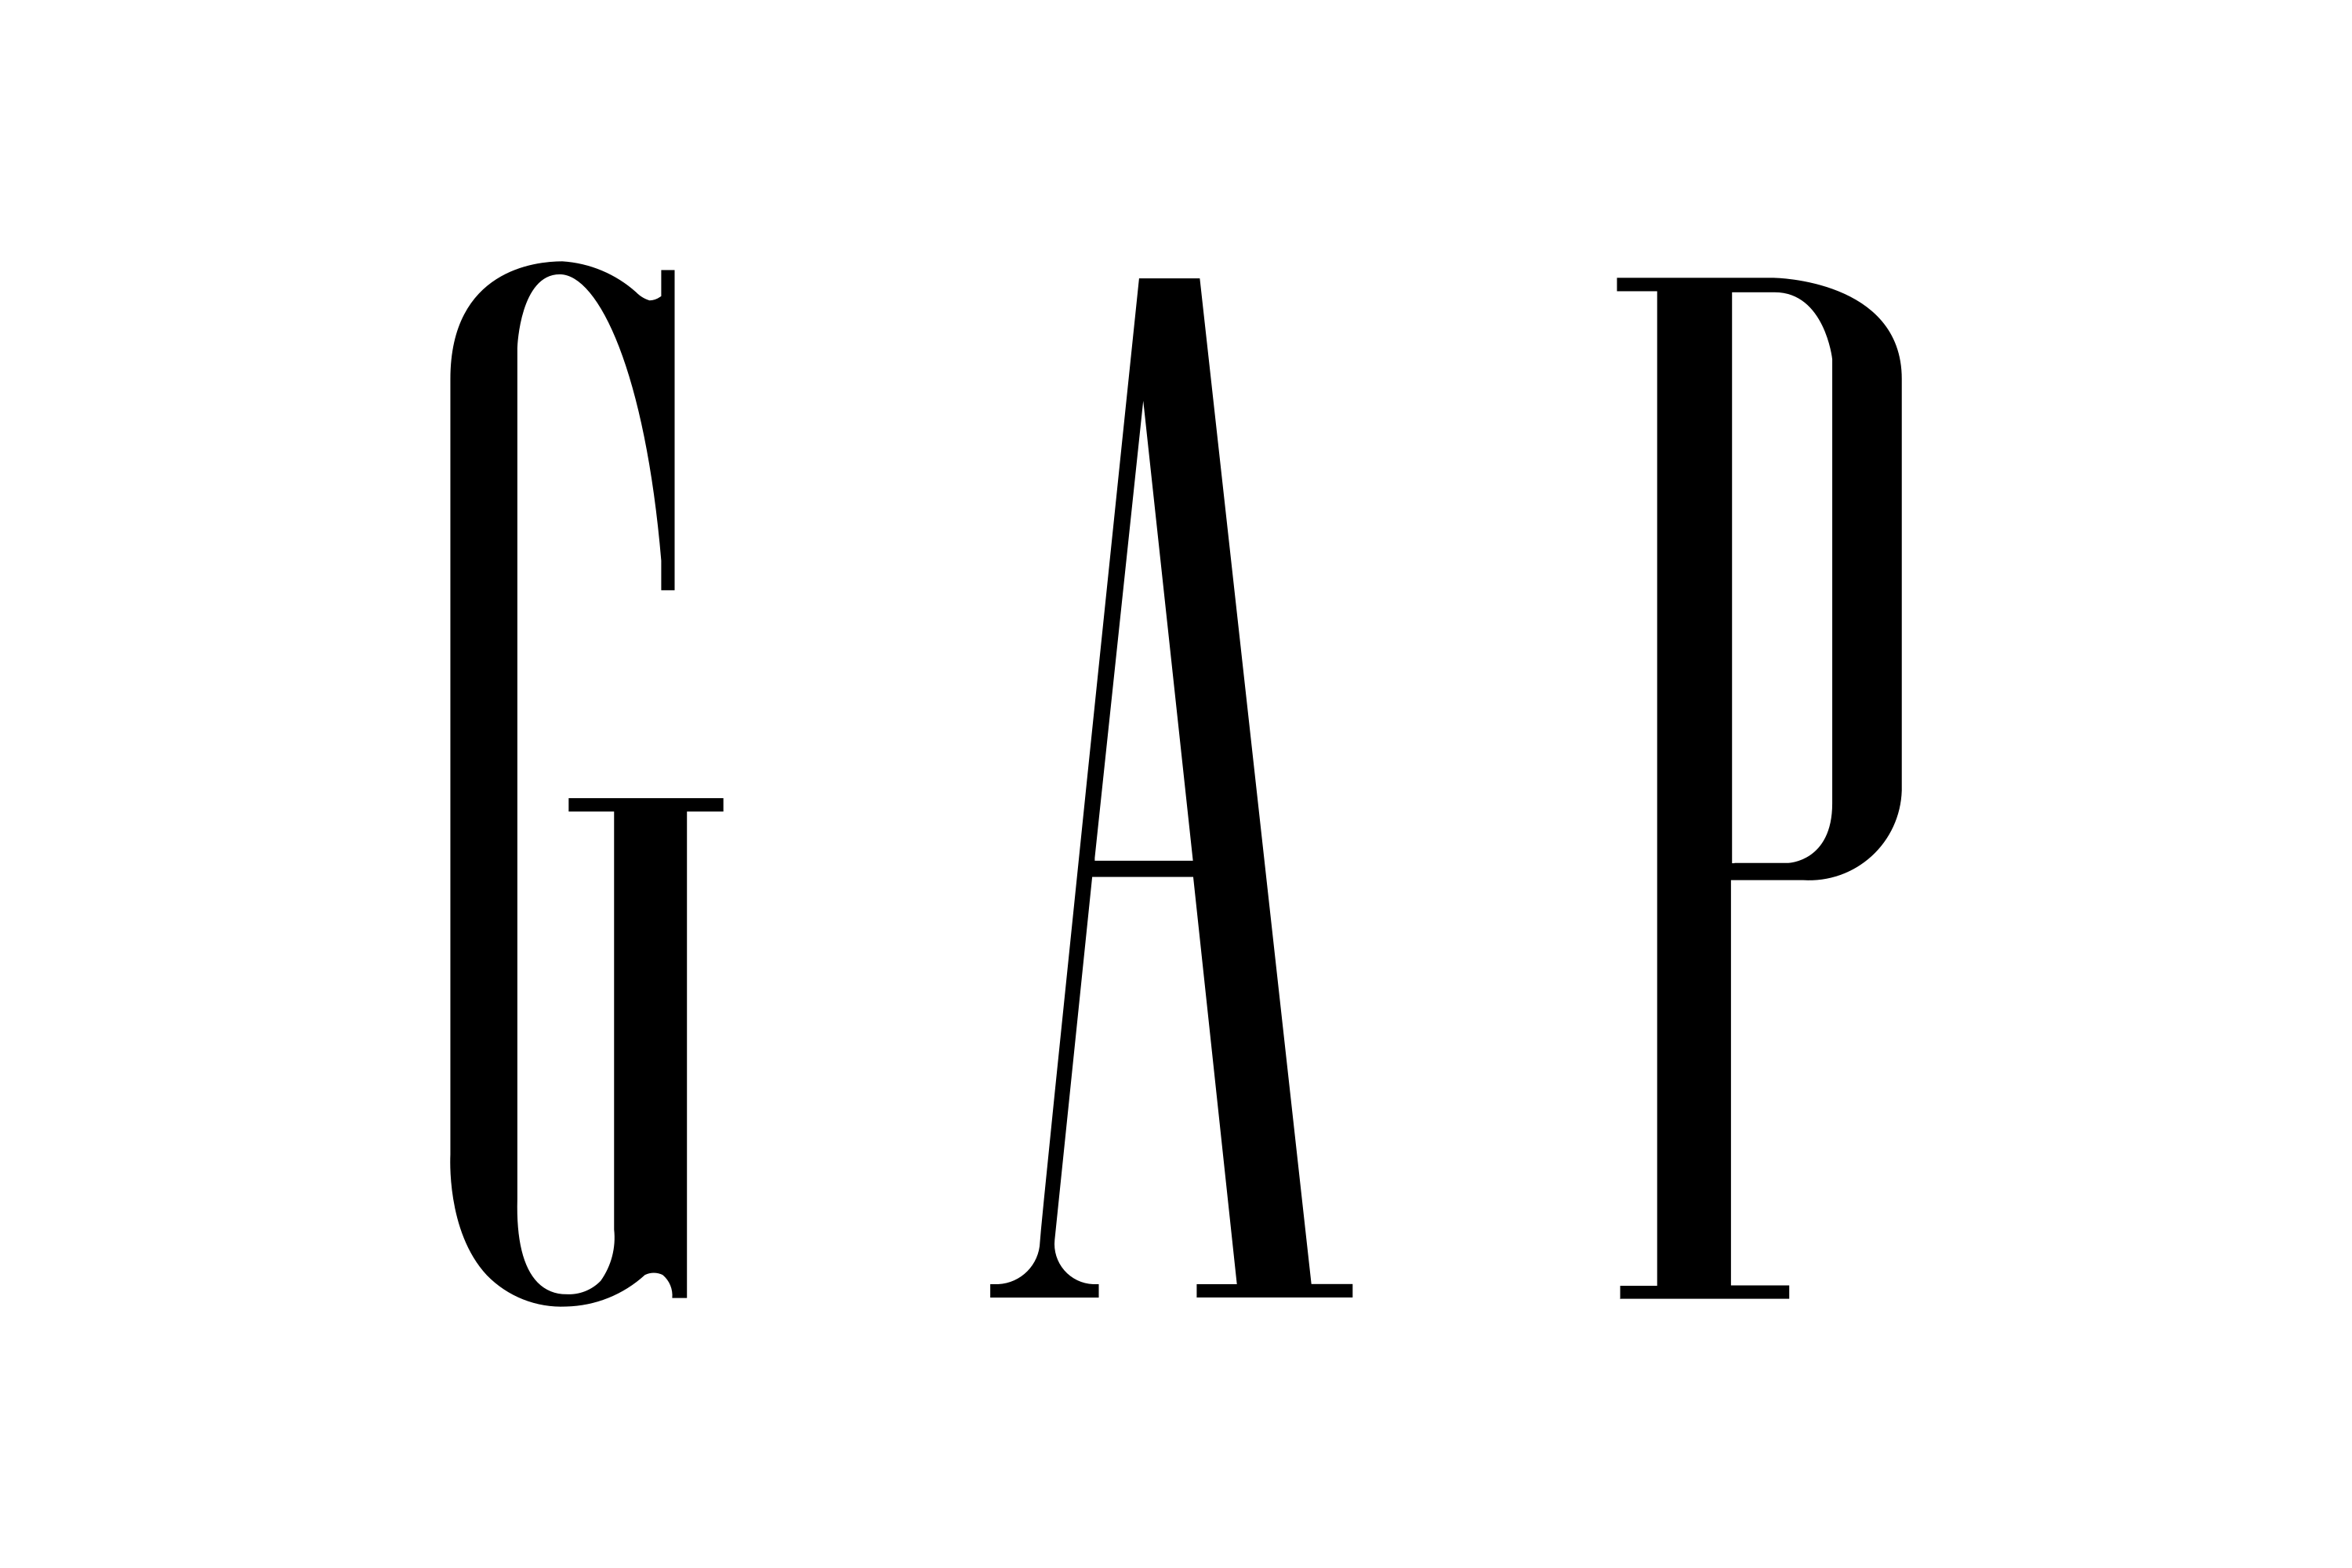 Download Gap, Inc. Logo in SVG Vector or PNG File Format - Logo.wine